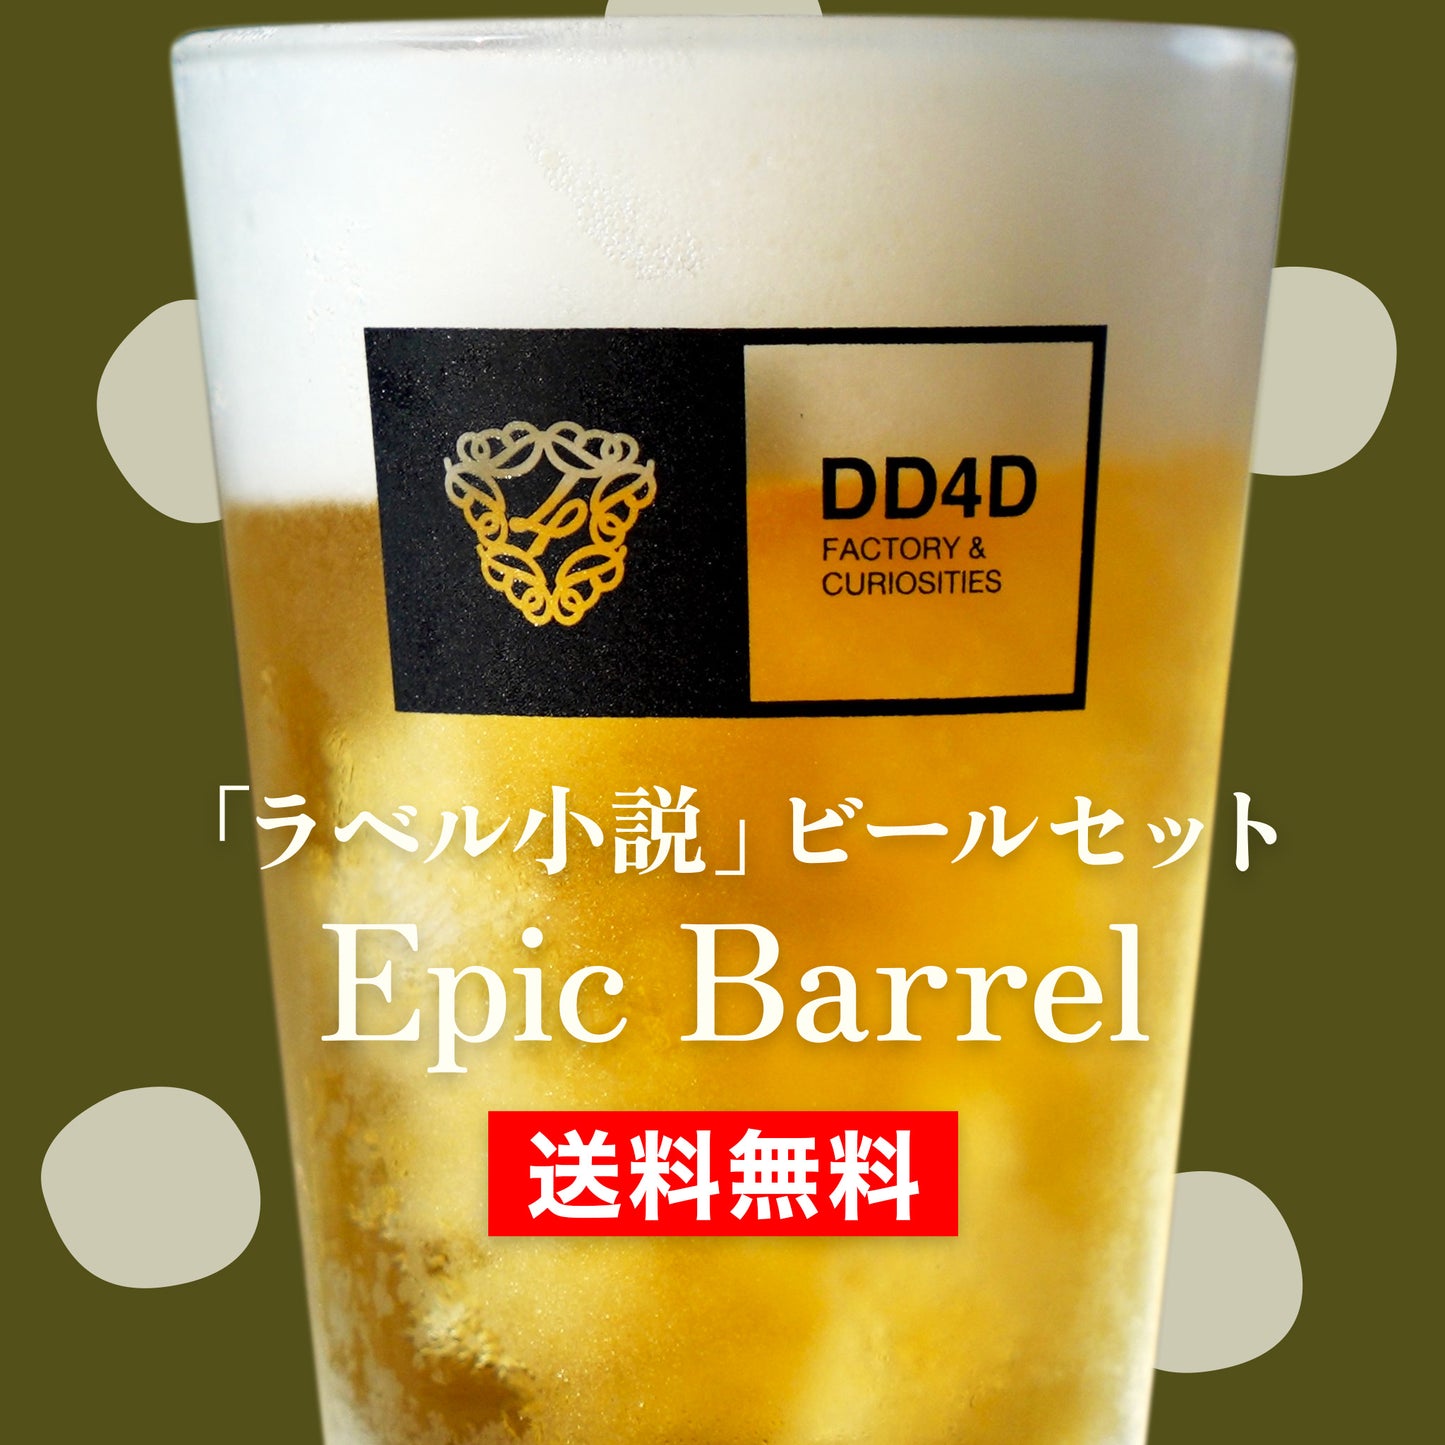 「ラベル小説」ビールセット "Epic Barrel" | ショートショート作家 田丸雅智 × DD4D BREWING